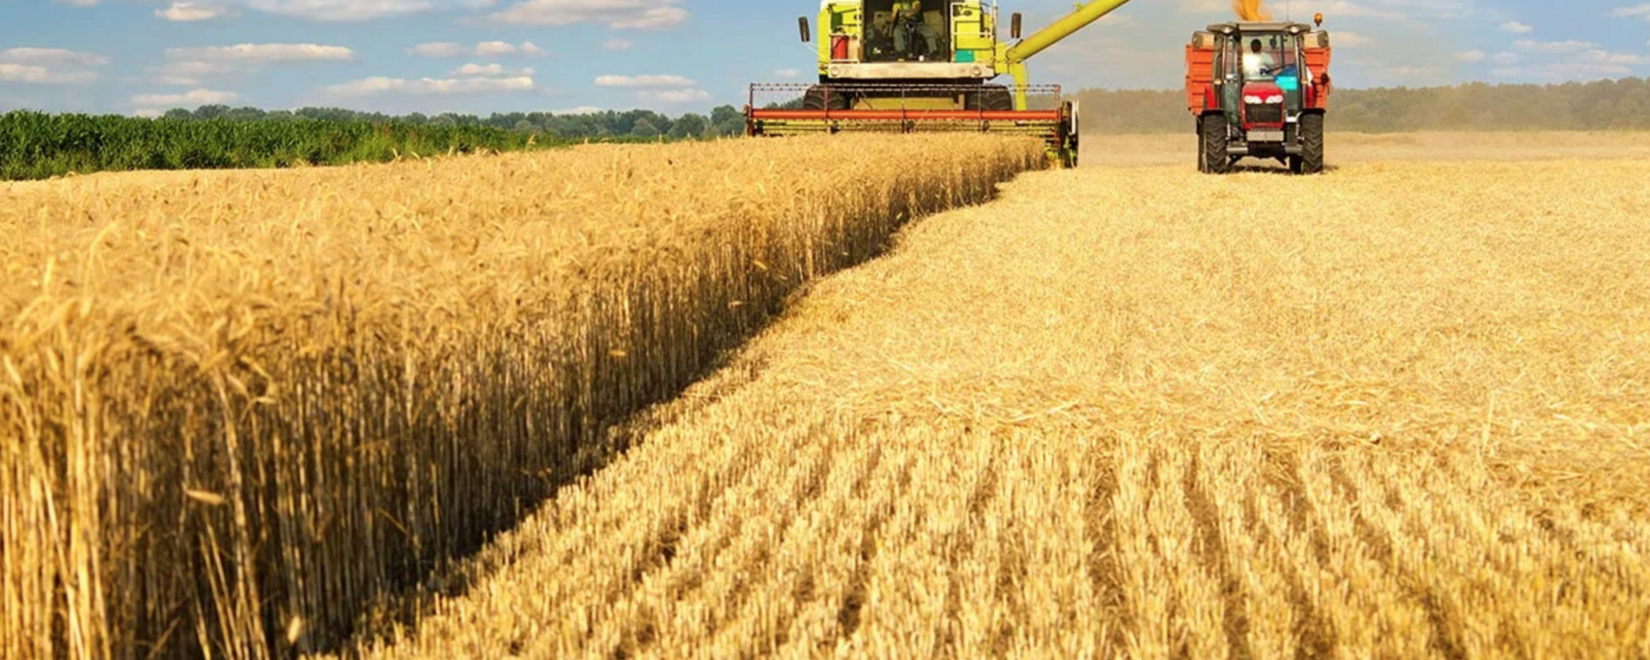 В США завершается уборка яровой пшеницы